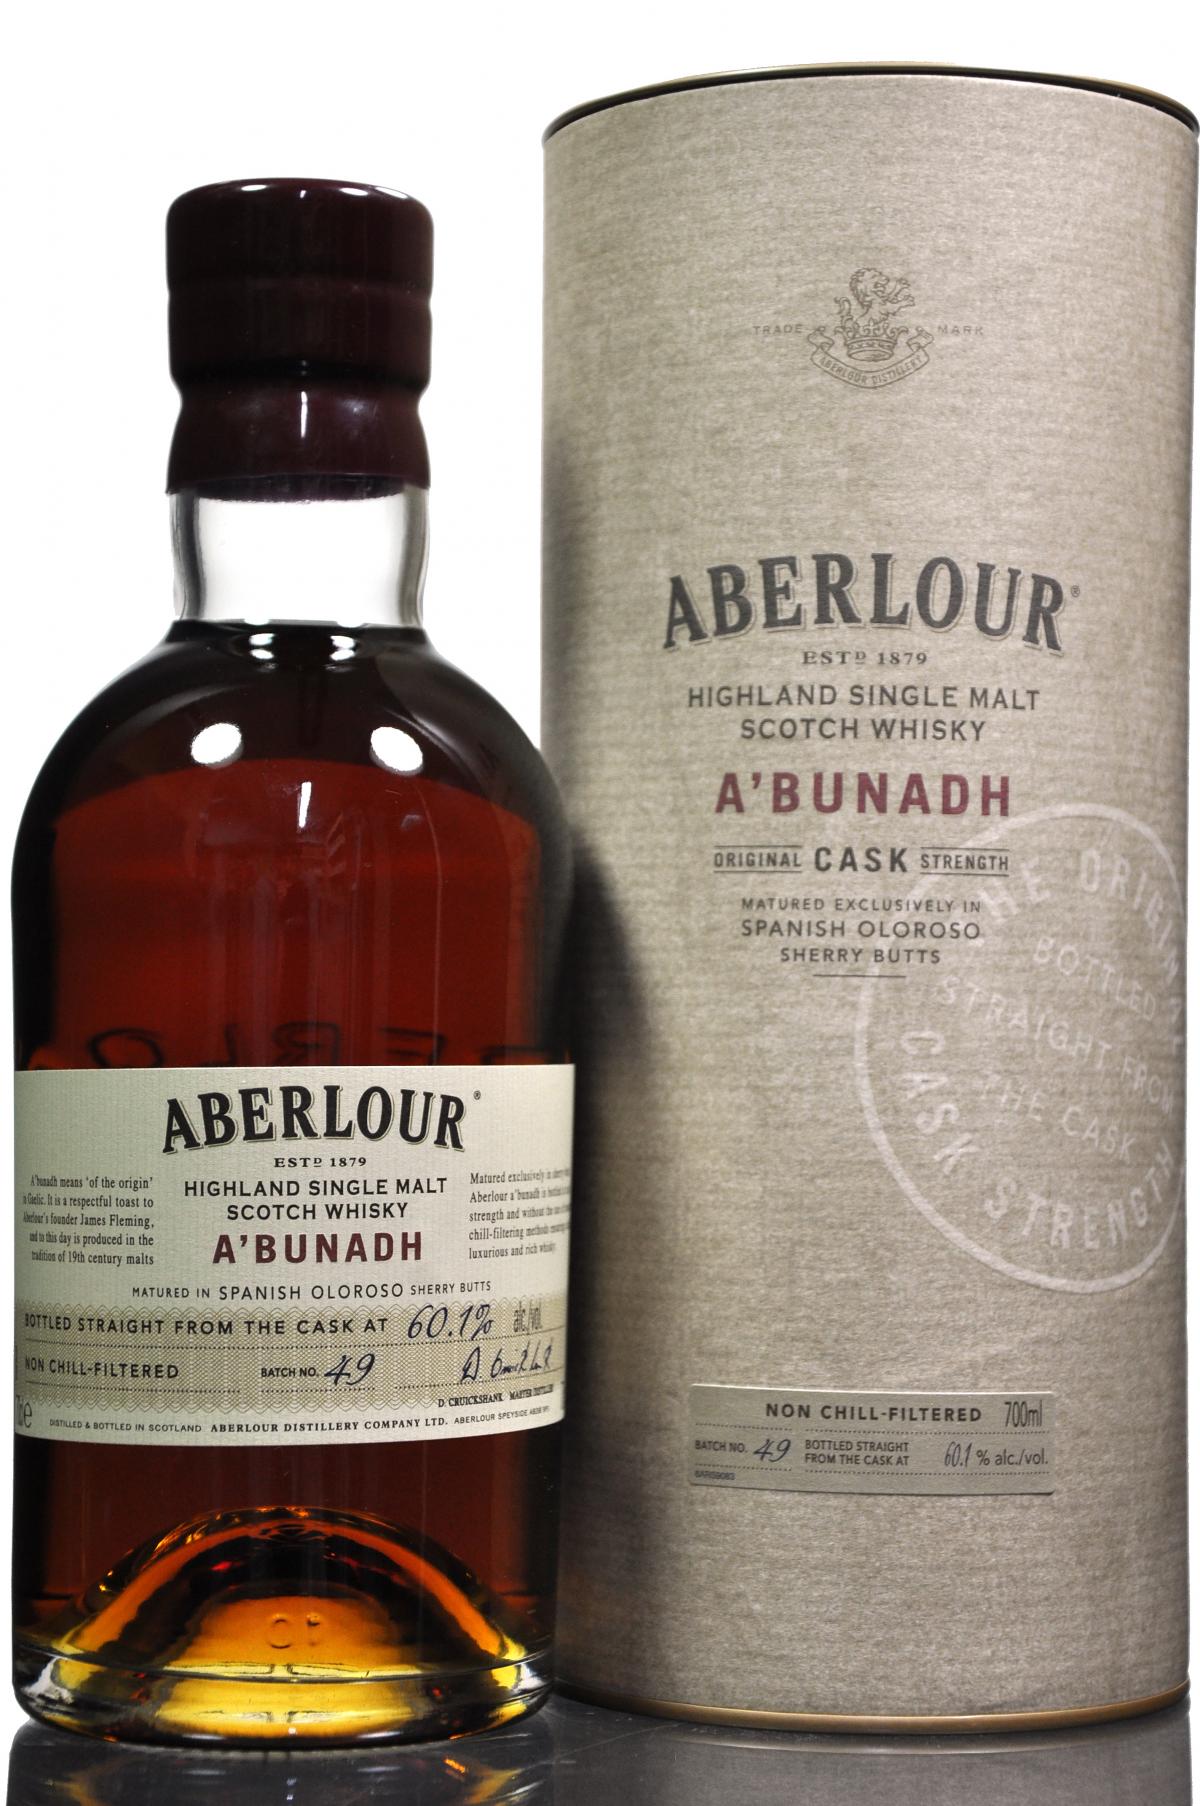 Aberlour Abunadh - Batch 49